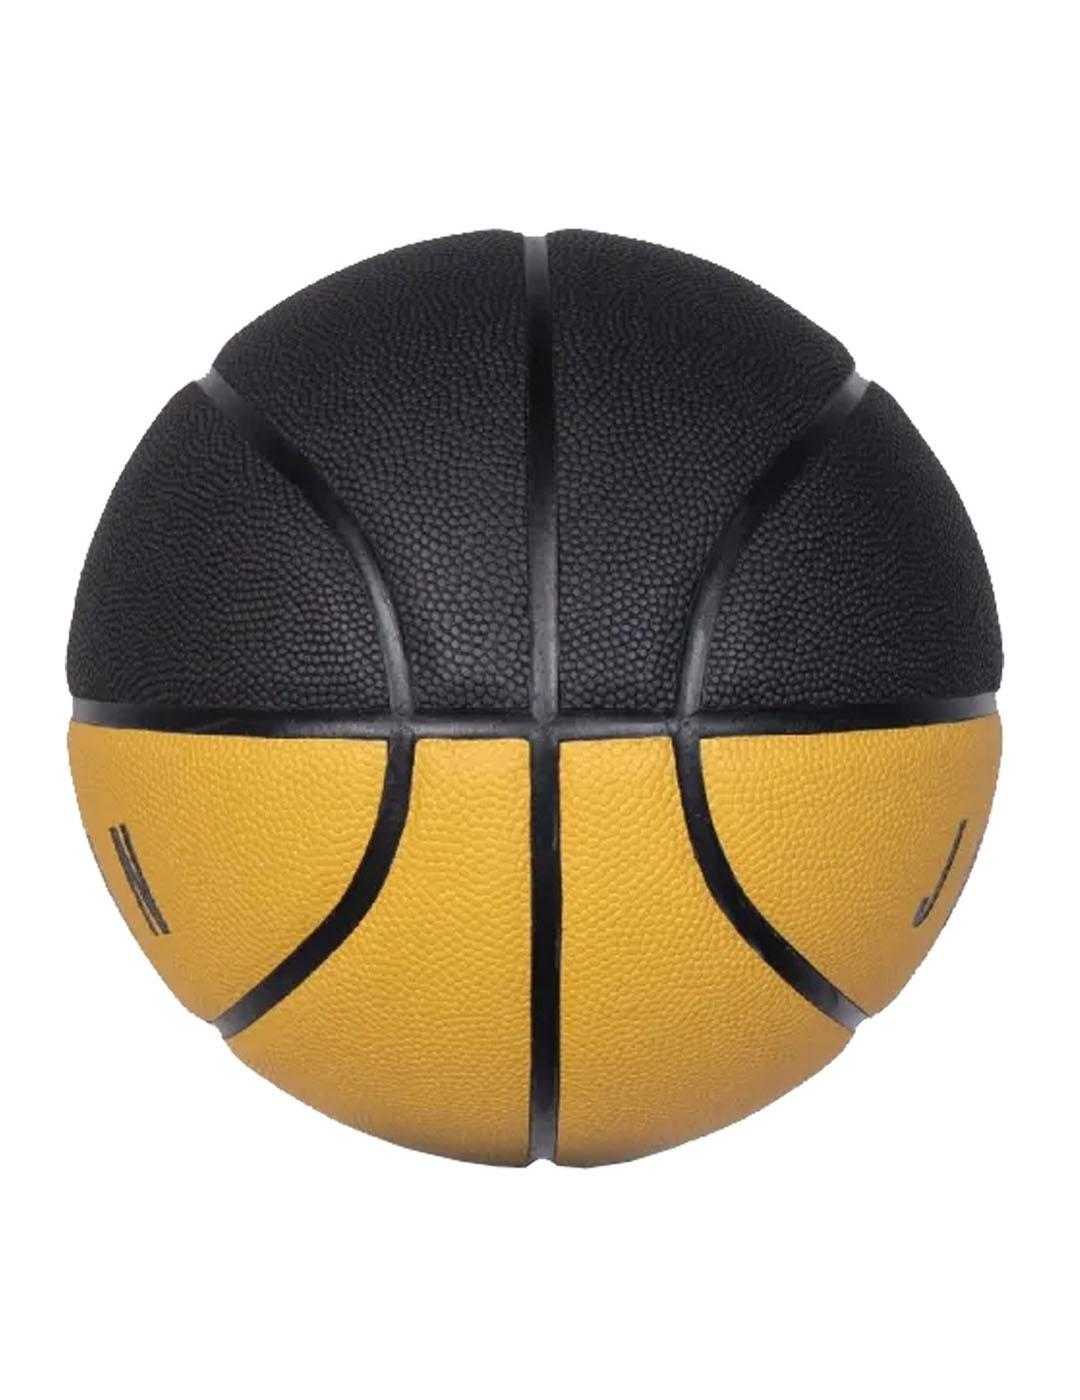 Balón Unisex Basketl Jordan Ultimate Mostaza Negro